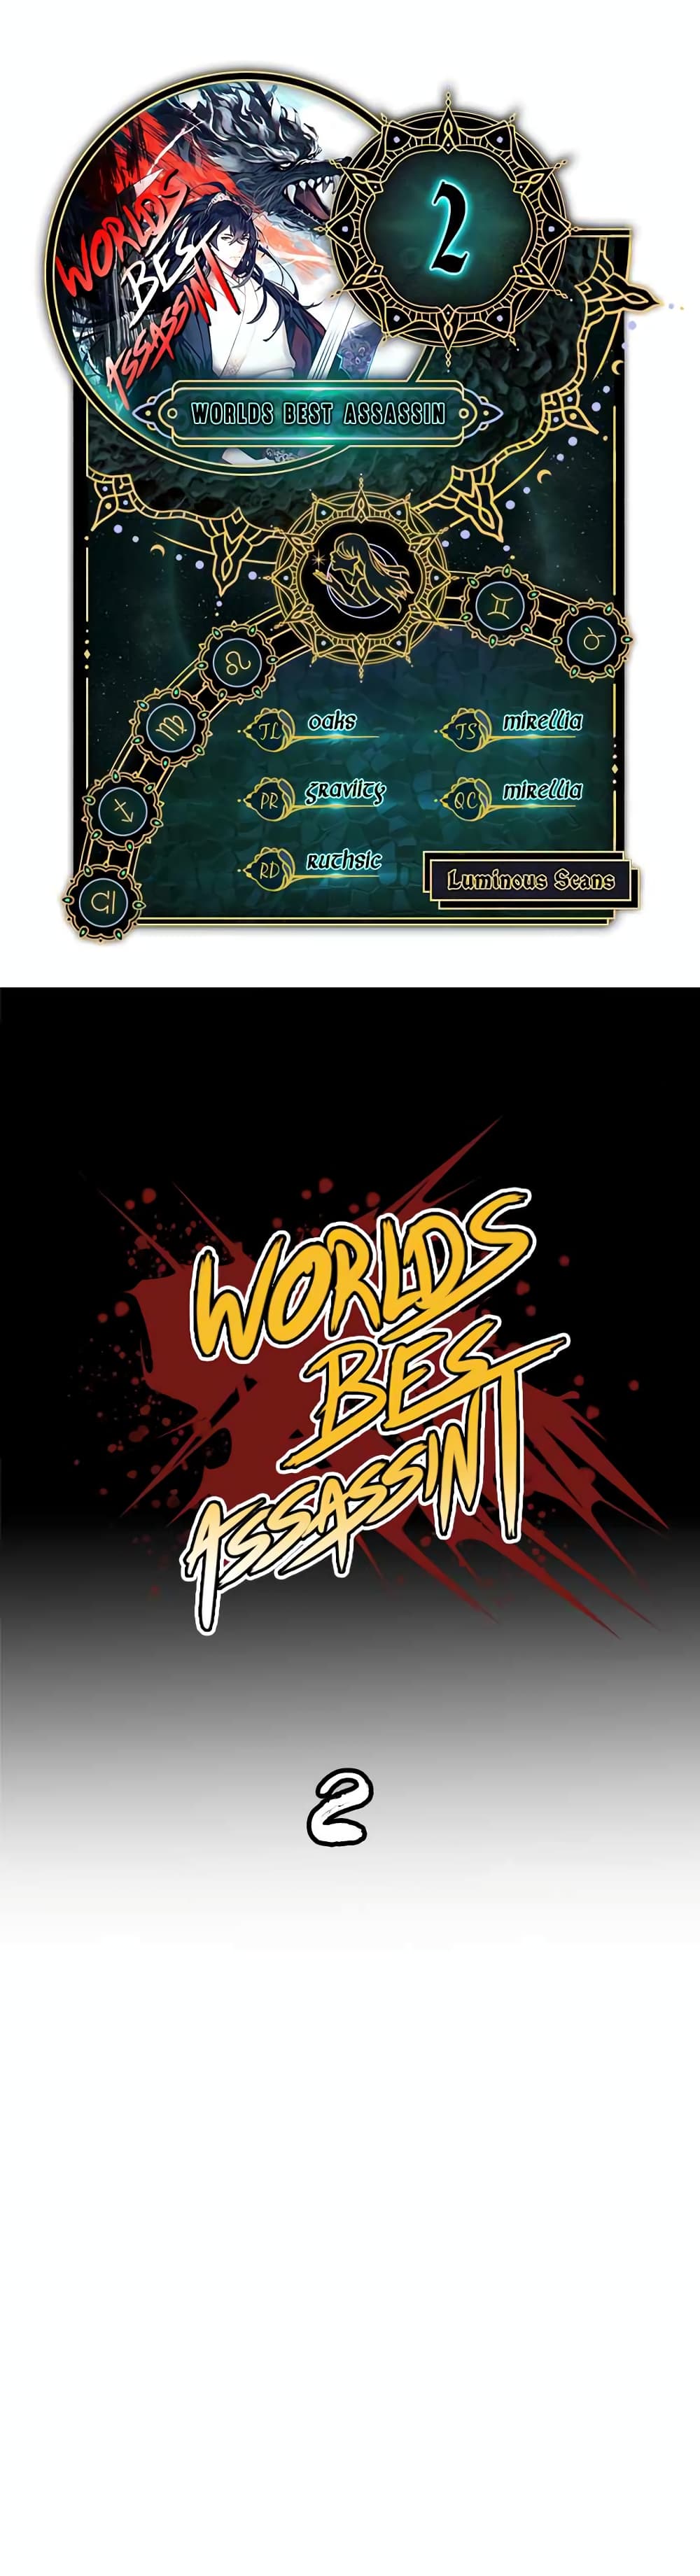 Worlds Best Assassin 2 (2)